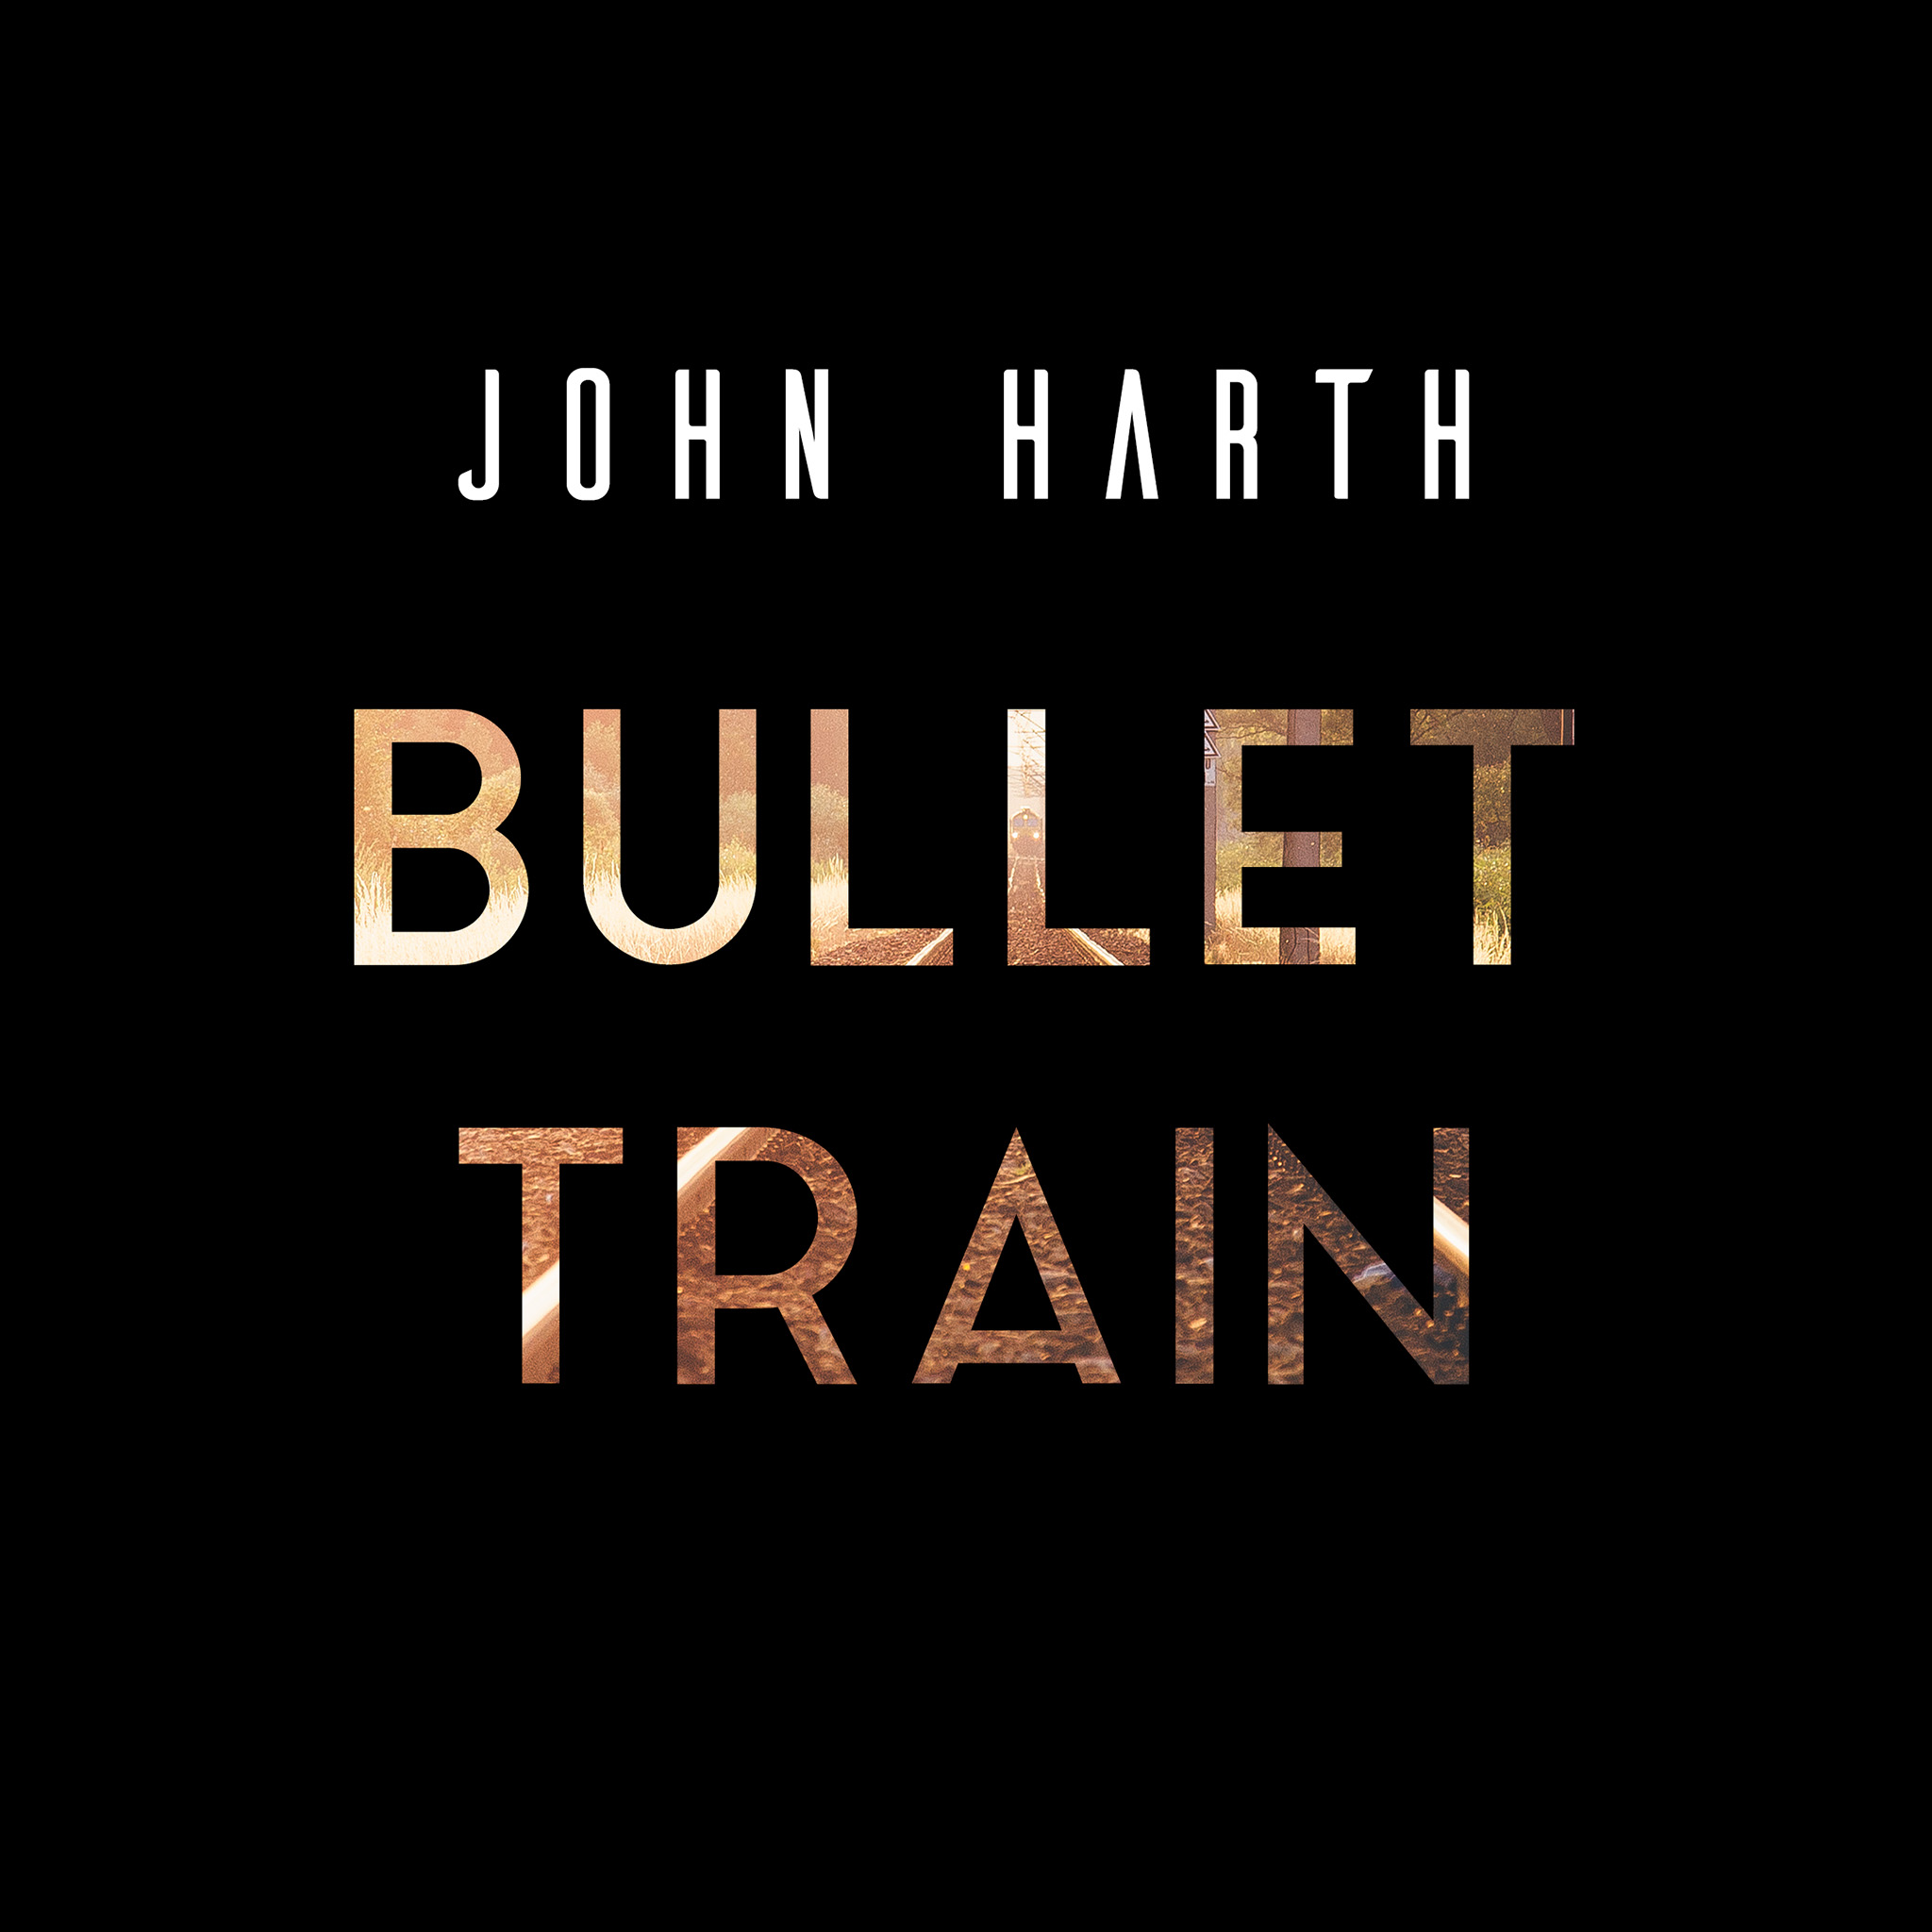 John Harth - Bullet Train